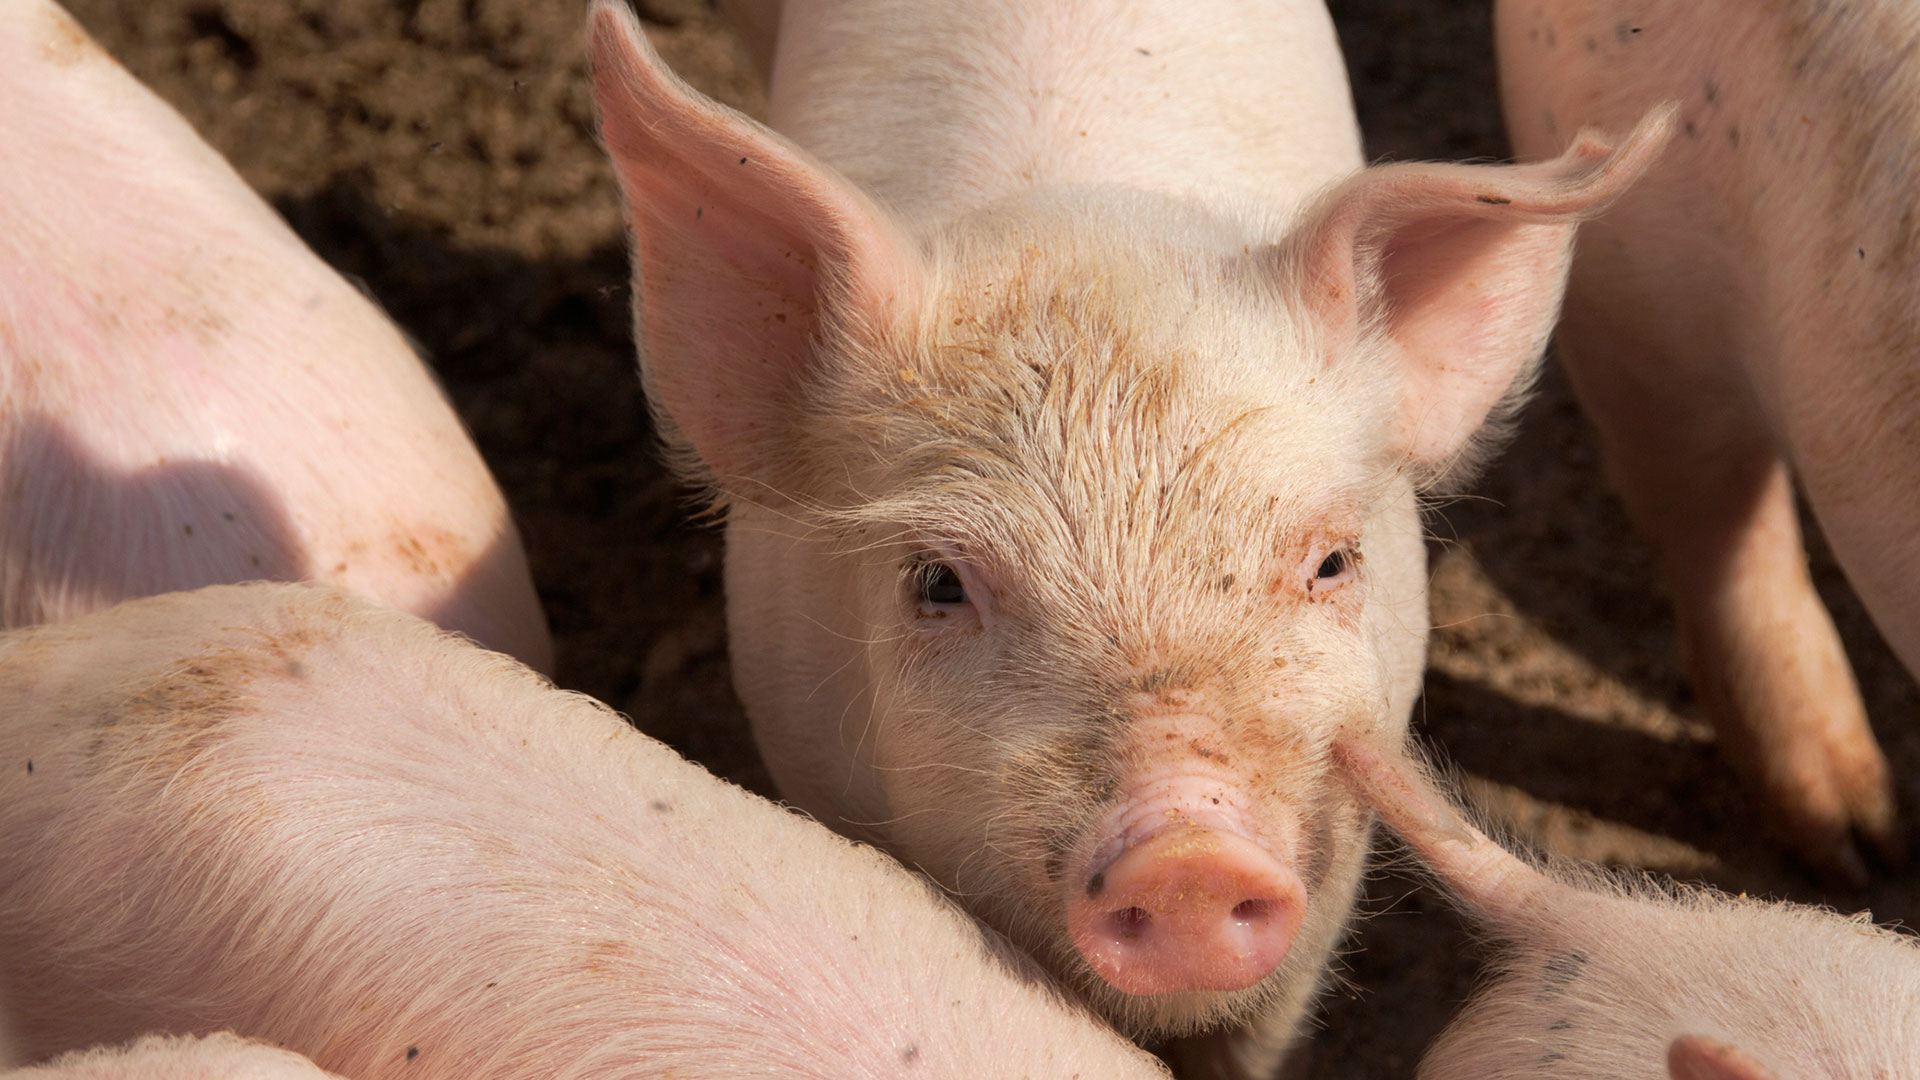 En Alemania se infectaron cerdos con el virus de la gripe aviar H5N1. Incluso cuando se utilizaron dosis elevadas, el virus apenas se replicó en los animales